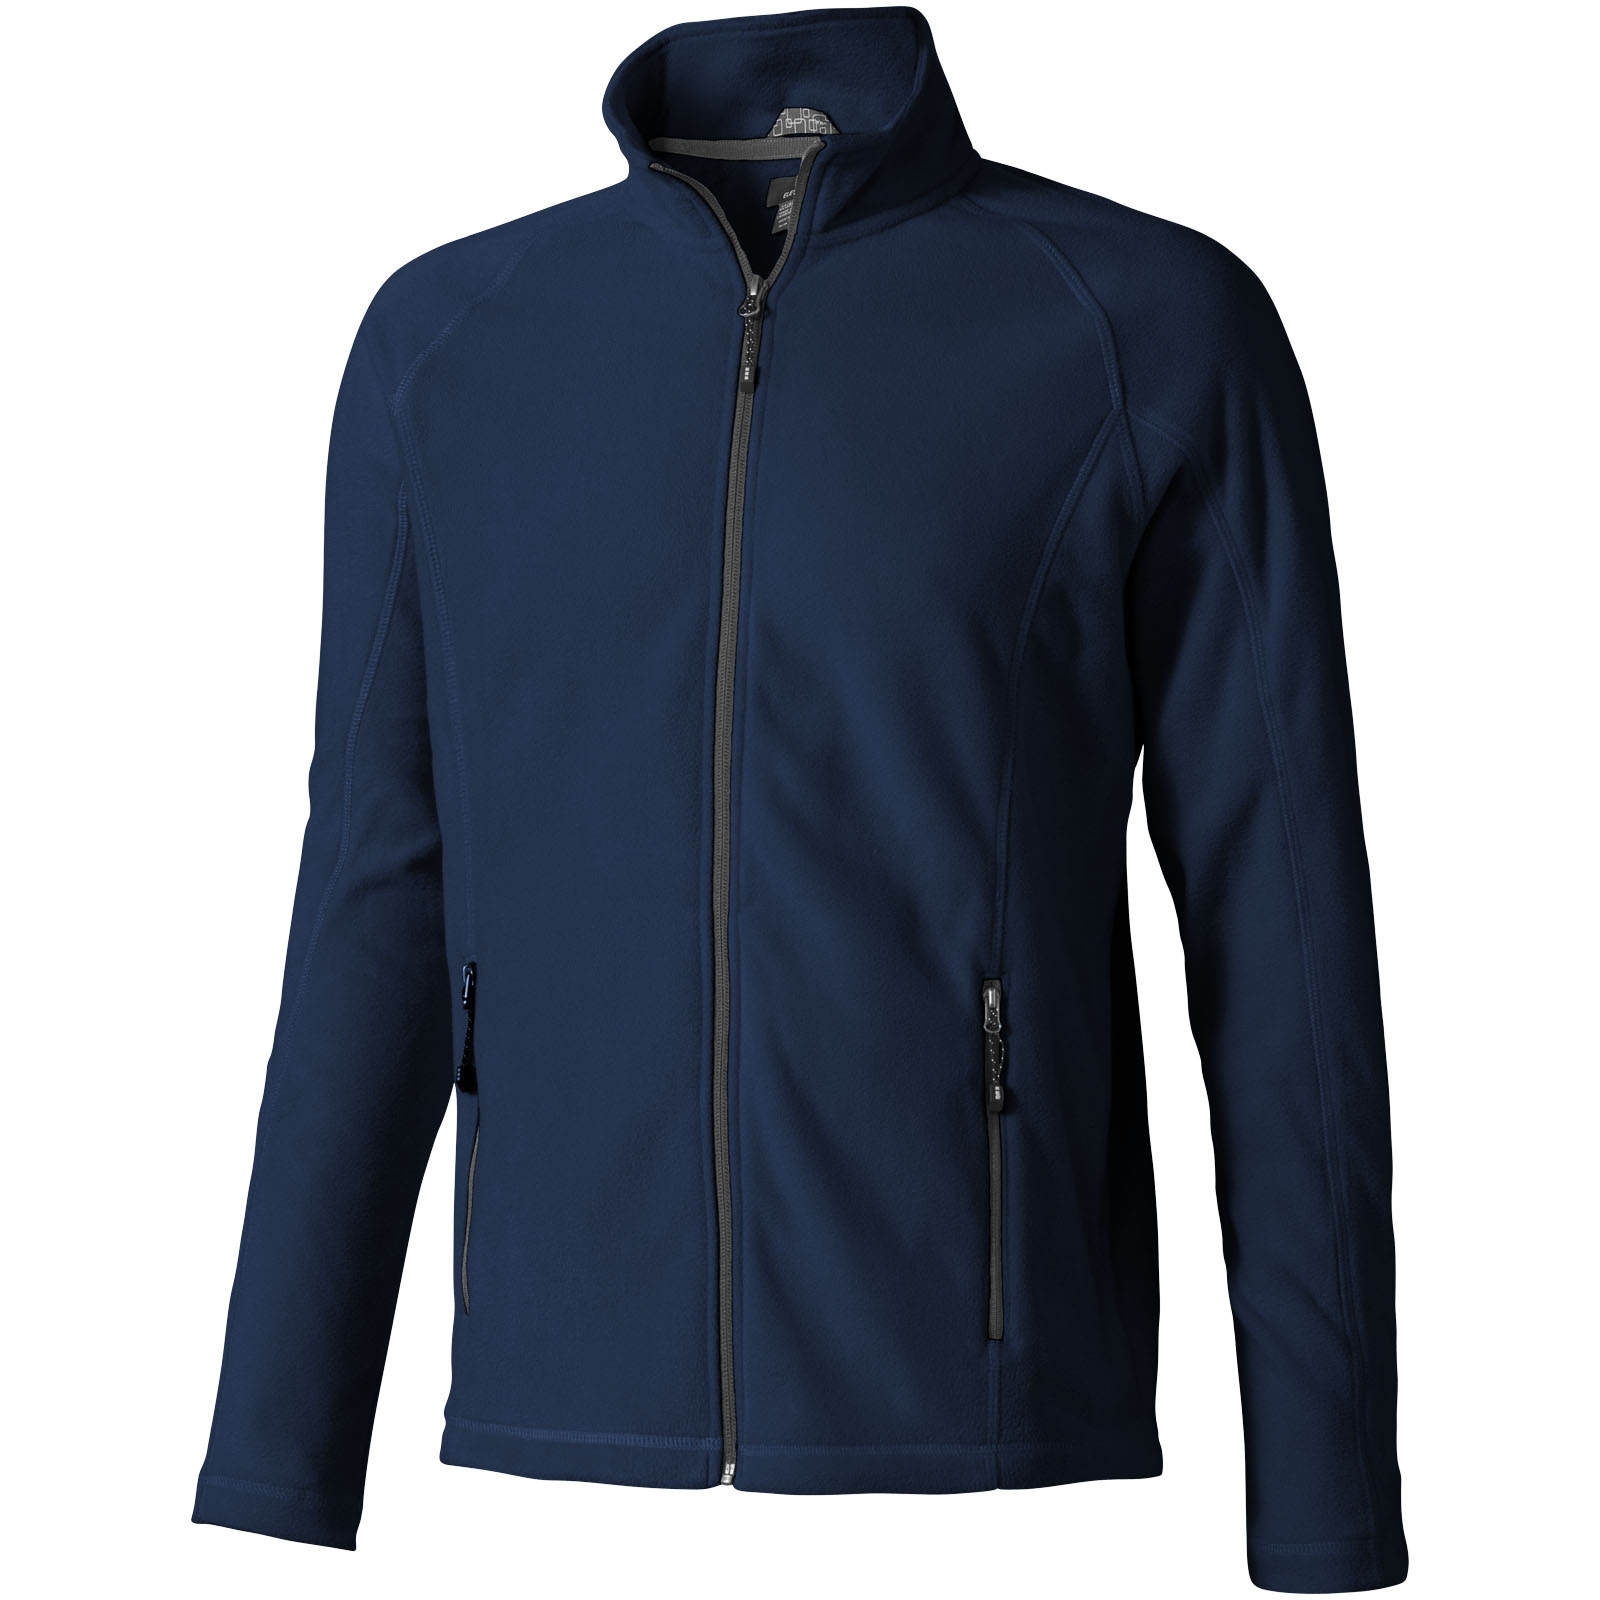 Advertising Fleece - Rixford men's full zip fleece jacket